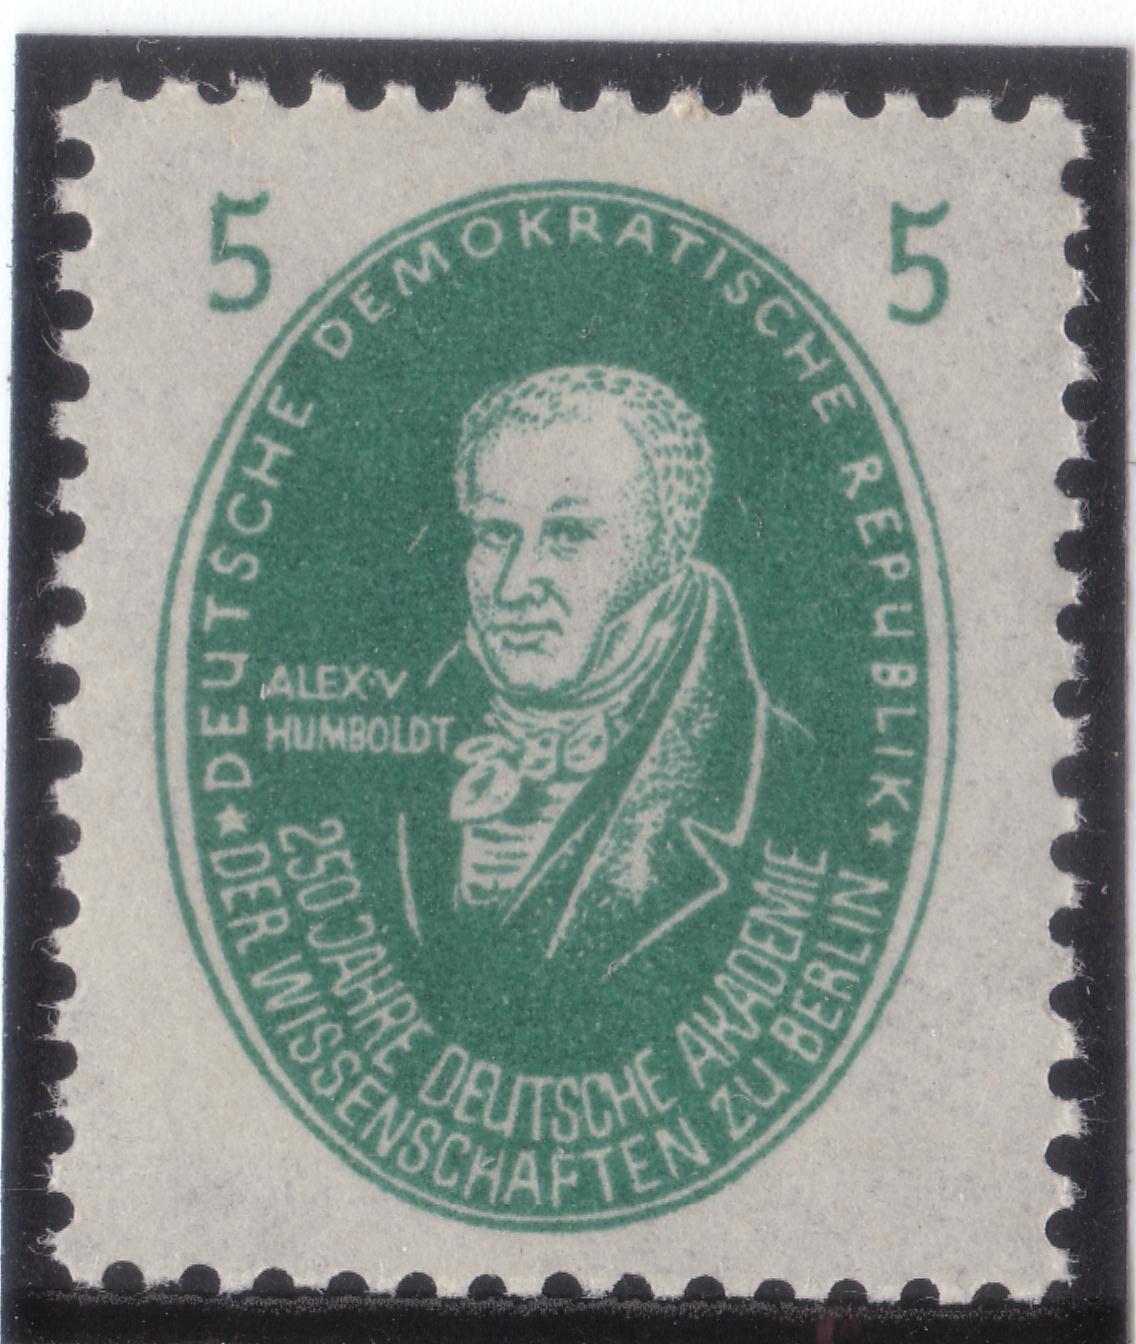 250 Jahre Deutsche Akademie der Wissenschaften zu Berlin - Naturforscher Alexander von Humboldt